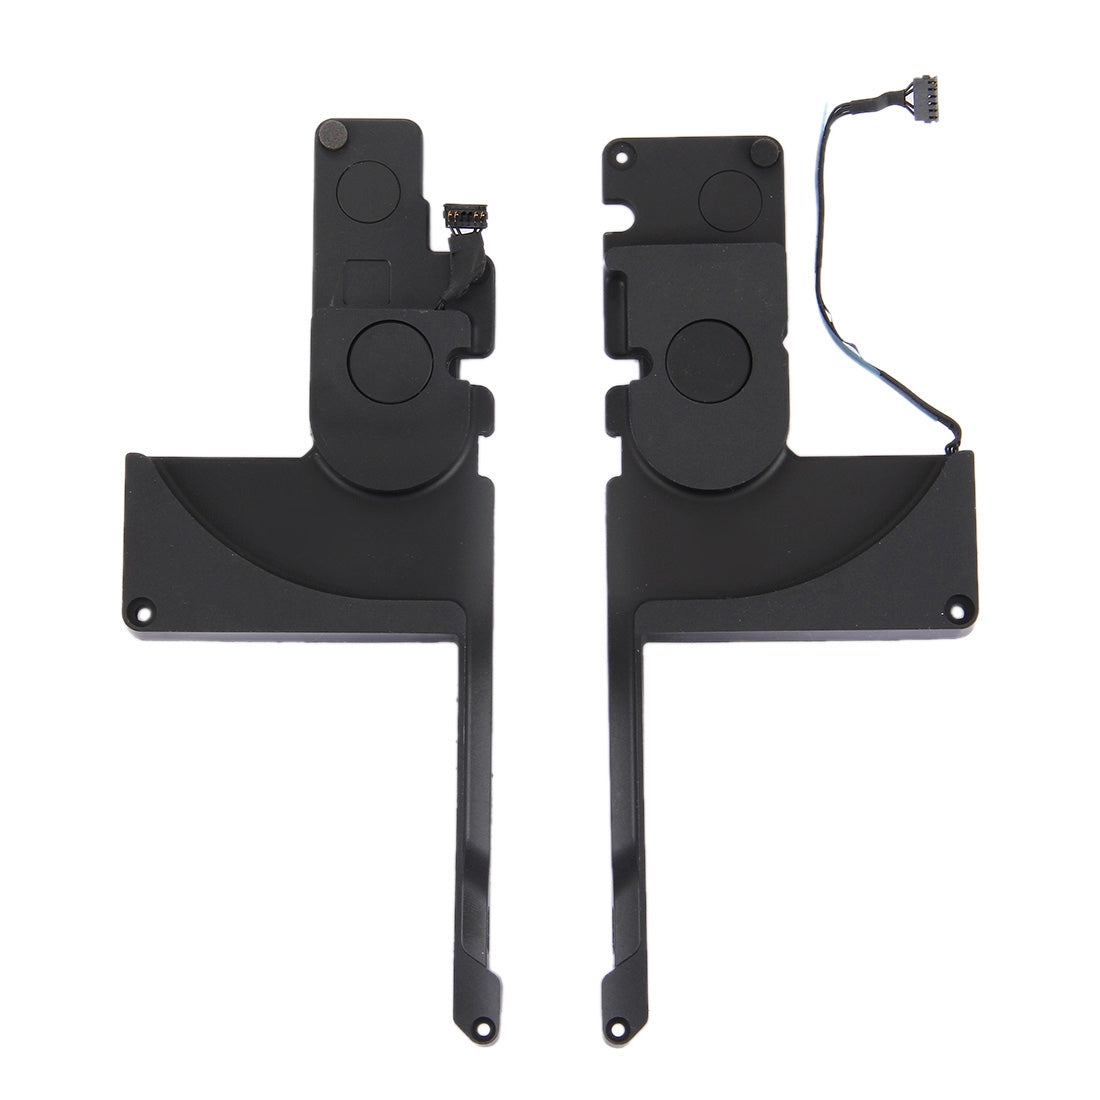 Speakers 2 units Loudspeakers Apple MacBook Pro 15.4 A1398 2012 2015